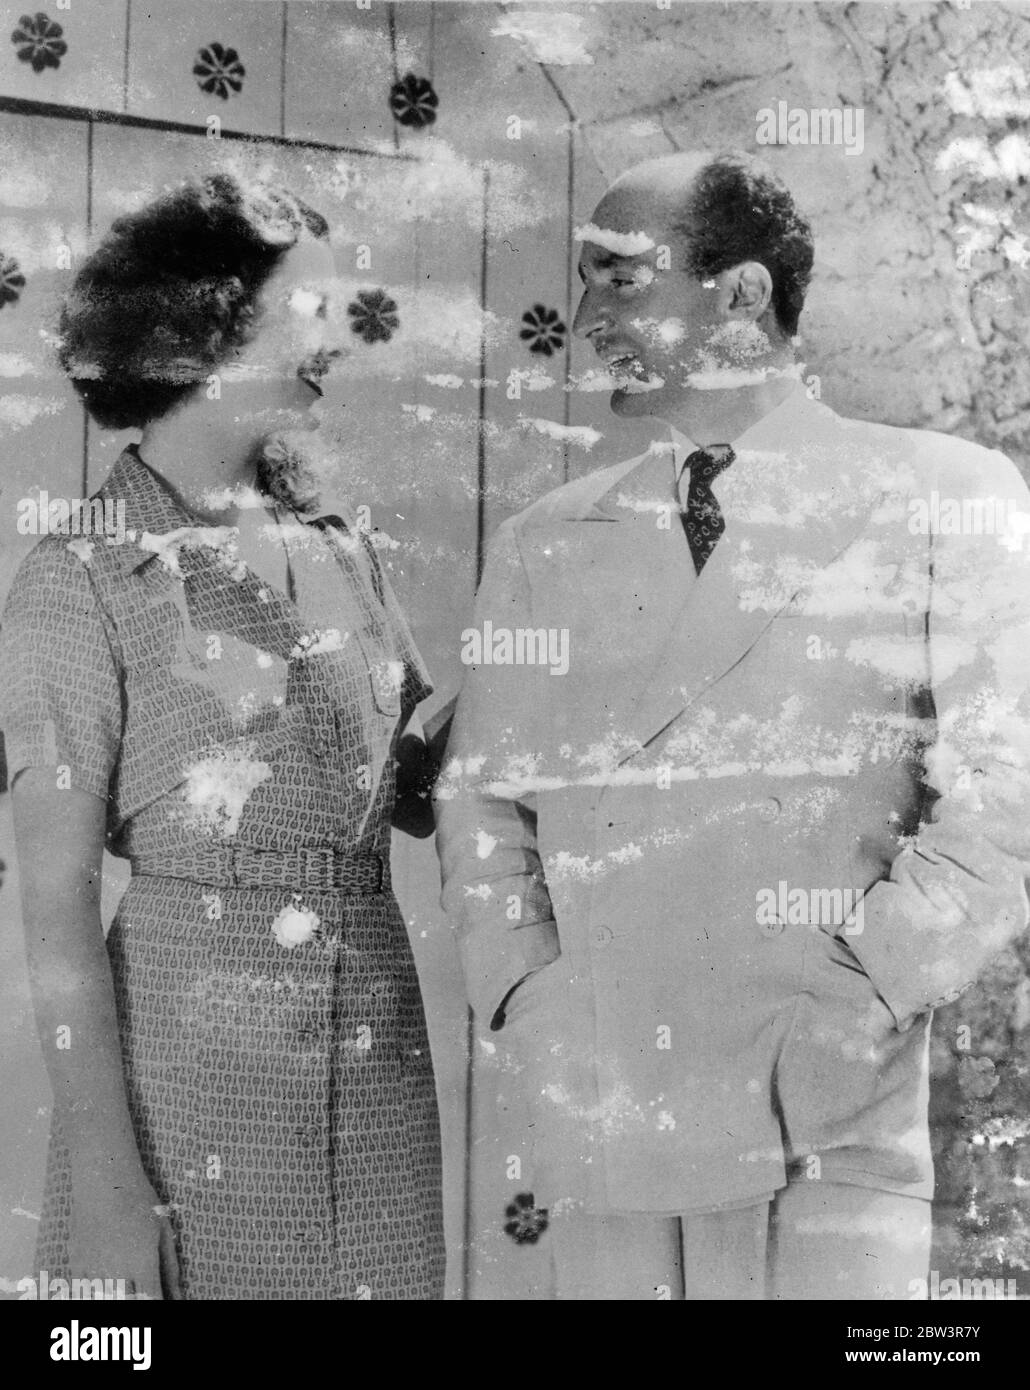 Myrna Loy Heimlich Verheiratet Mit Filmproduzent In Mexiko . Myrna Loy, die Filmschauspielerin, war heimlich mit Herrn verheiratet. Arthur Hornblow, Junior, der Hollywood-Filmproduzent, bei Ensenada, Mexiko. Hornblow ist Myrna Loy ' s ersten Ehemann, aber er war selbst vor kurzem von Juliette Croab geschieden, die Bühnenschauspielerin. Miss Loy, dessen richtiger Name Williams ist, wurde 1905 in Montana geboren und ursprünglich als Bildhauerin gedacht. Auf Anregung von Rudolph Valentino, der ihr eine große Filmlaufbahn vorausgesagt hatte, wandte sie sich dem Film zu. Foto zeigt : Myrna Lay fotografiert mit ihrem Mann, A Stockfoto